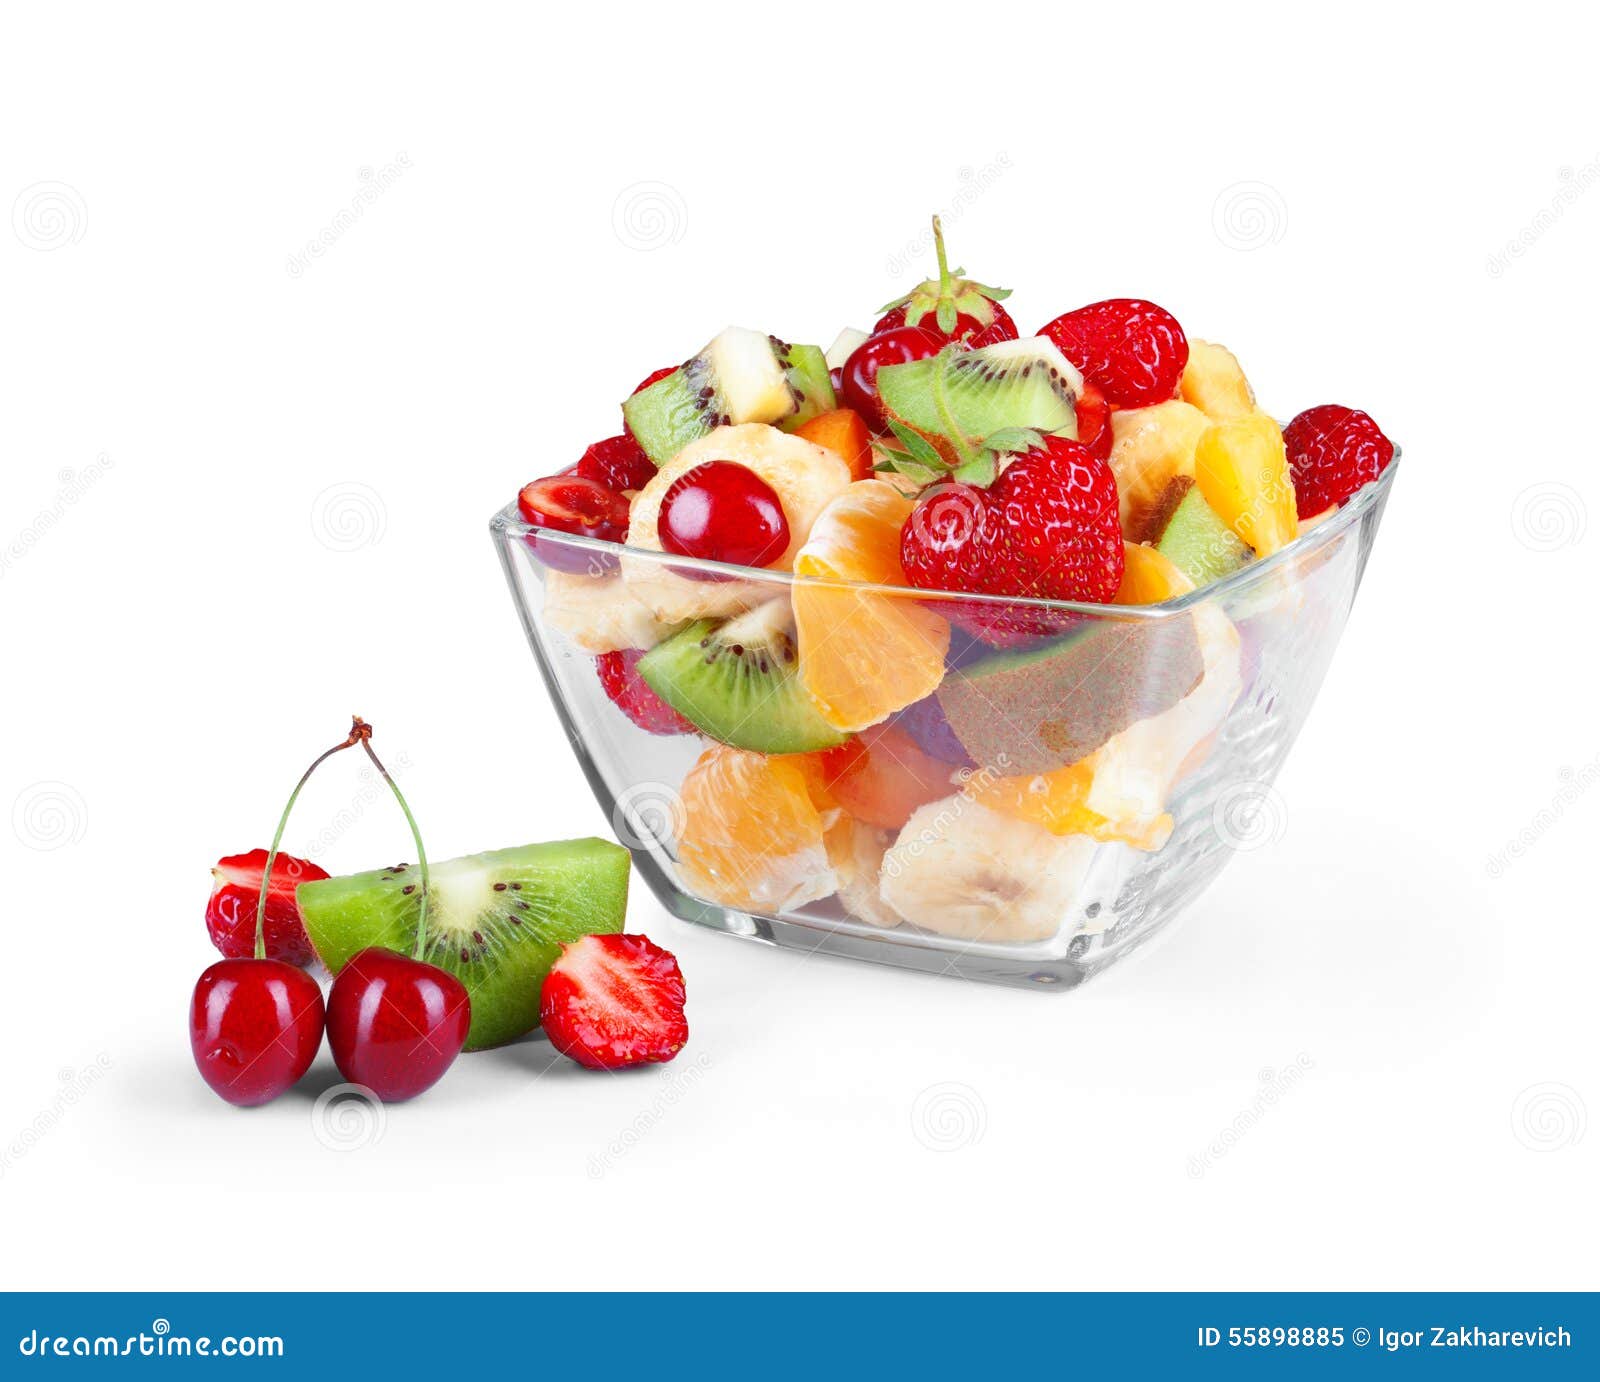 Glass Bowl With Fresh Fruits Salad Stock Image Image Of Kiwi Banana